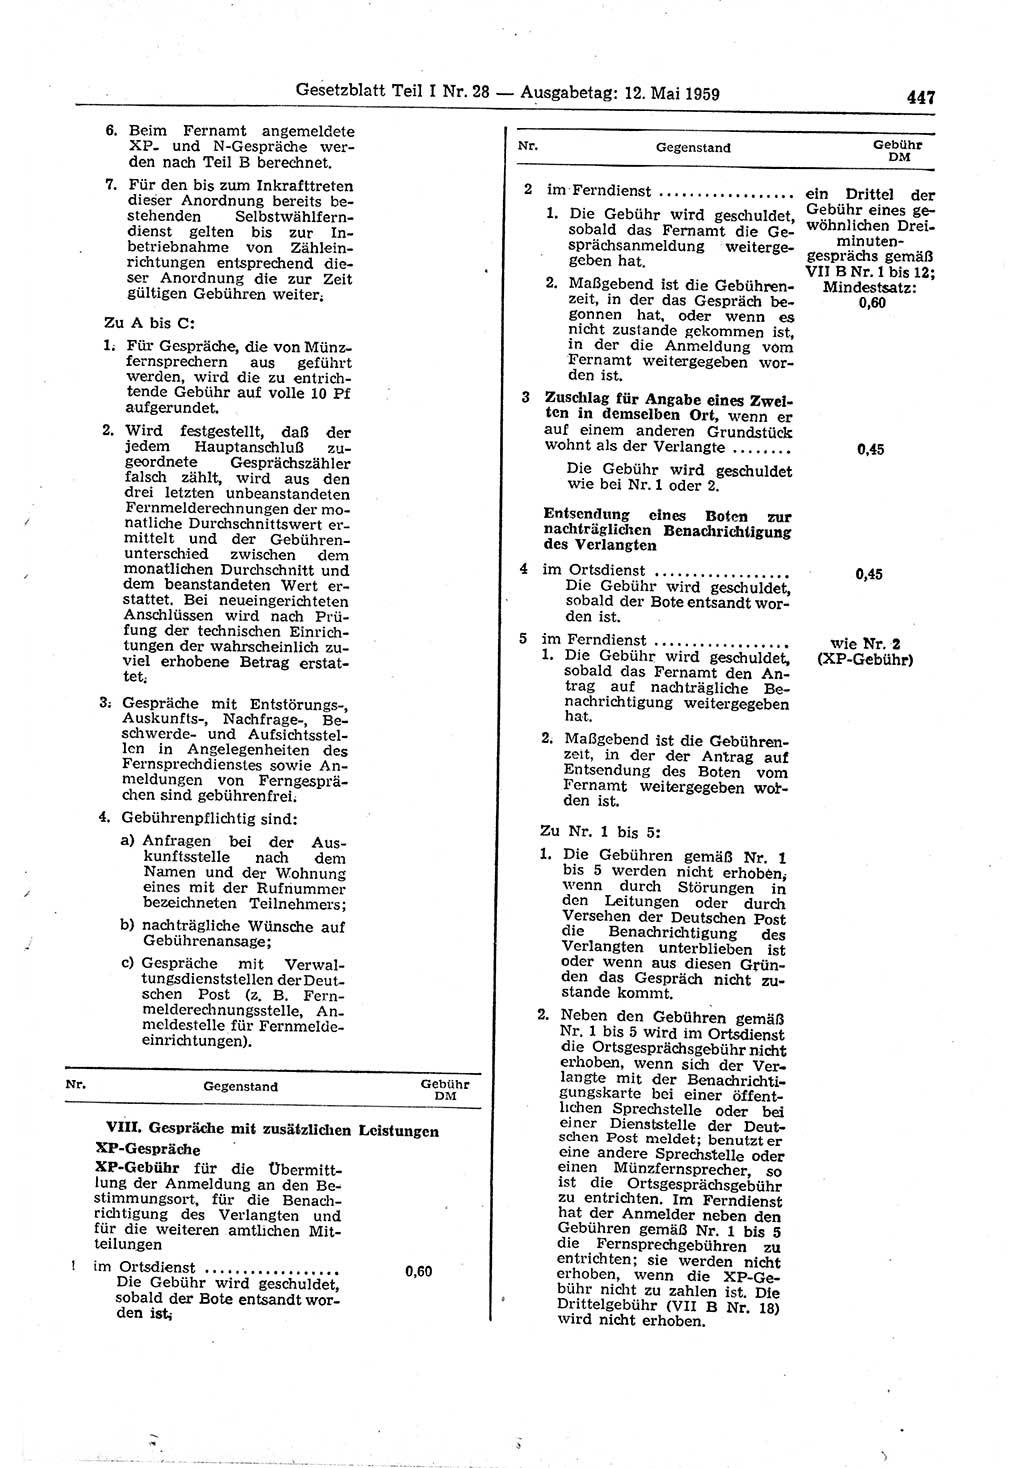 Gesetzblatt (GBl.) der Deutschen Demokratischen Republik (DDR) Teil Ⅰ 1959, Seite 447 (GBl. DDR Ⅰ 1959, S. 447)